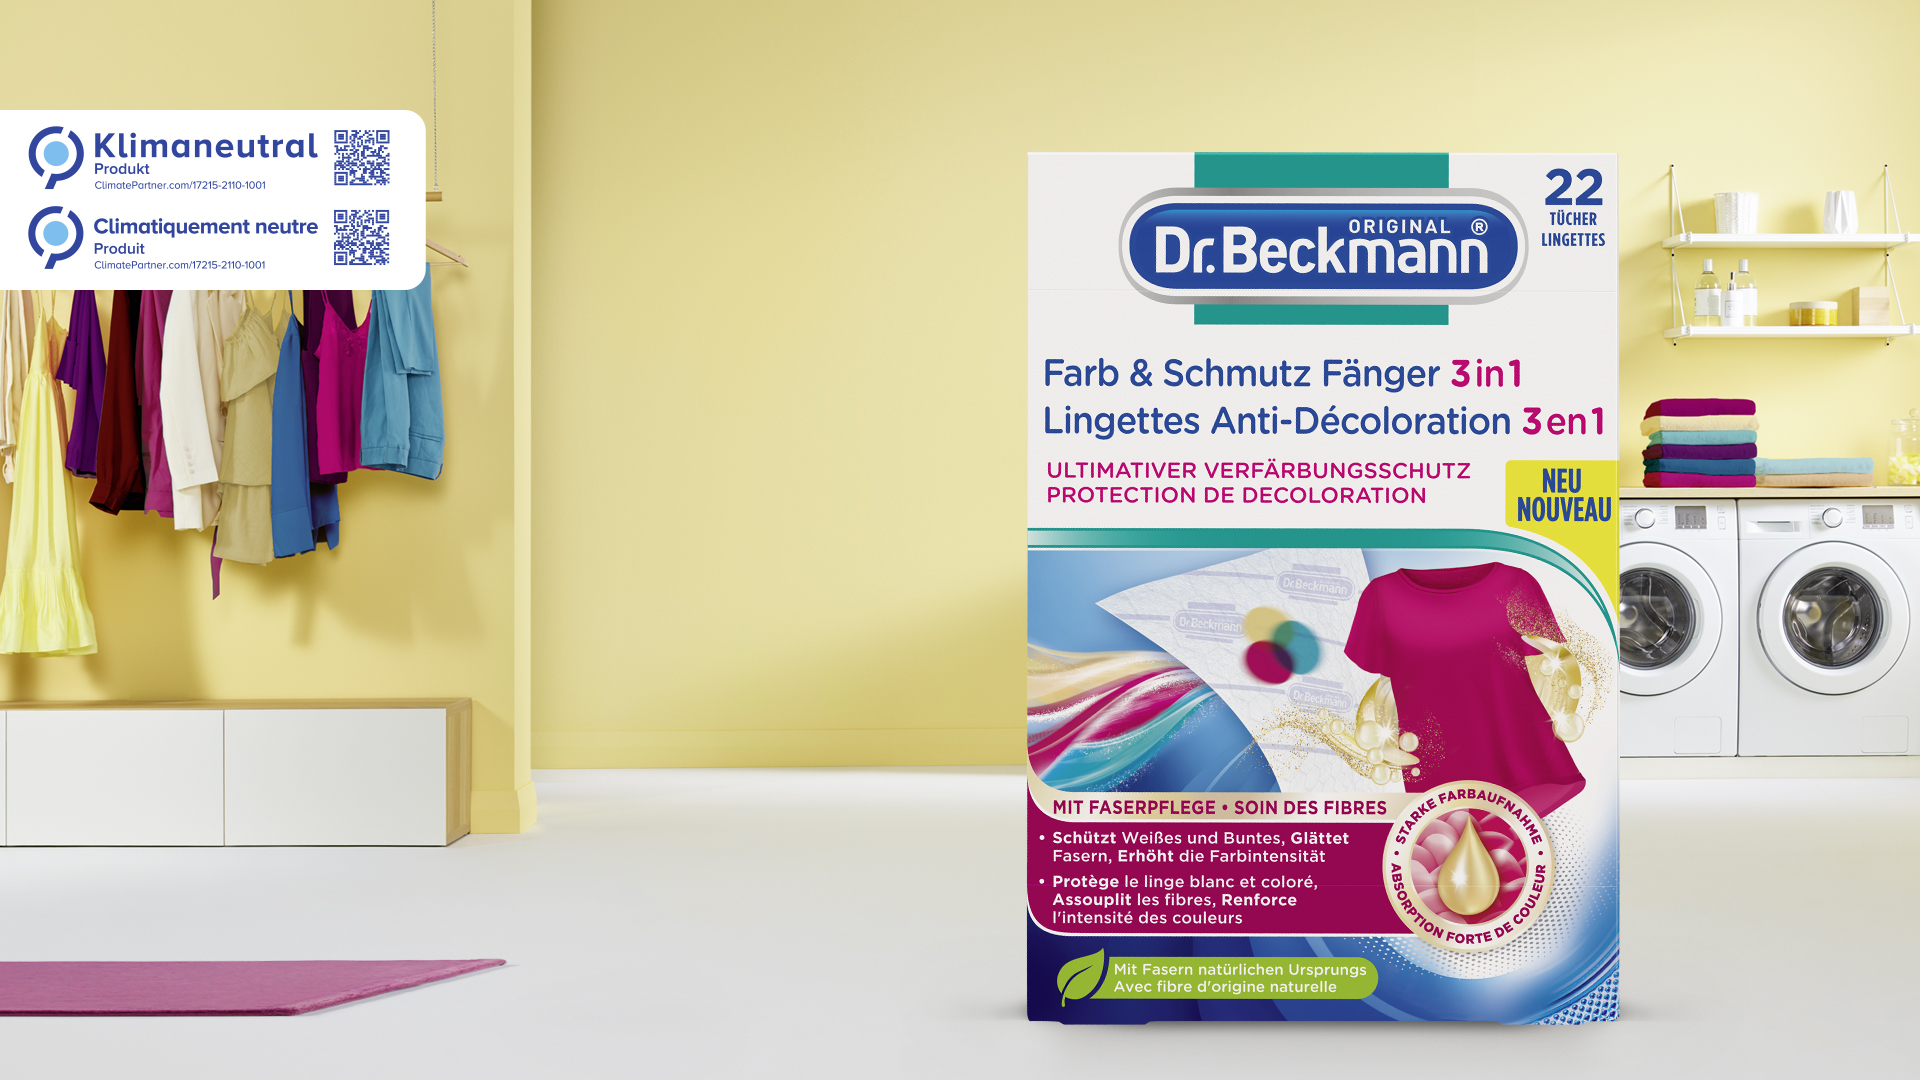 Dr. Beckmann Lingette Anti-Décoloration avec microfibre– Pour